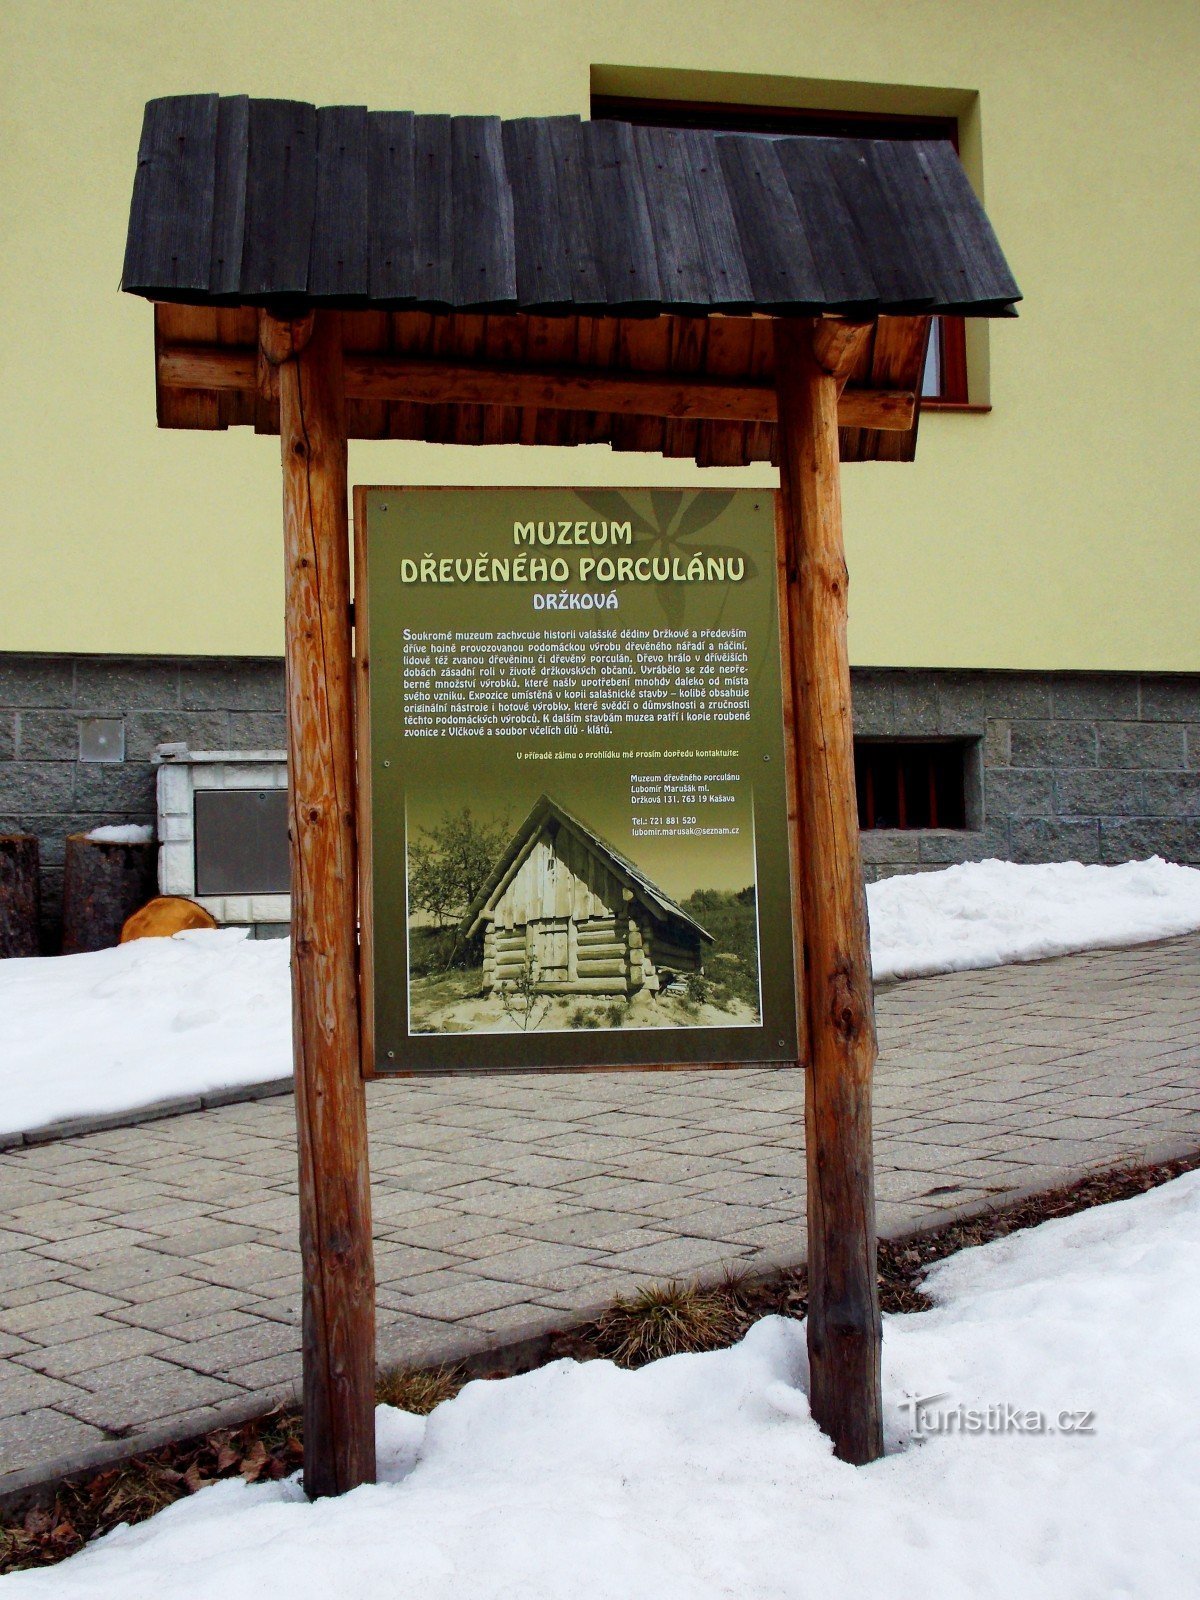 Puuposliinimuseoon Držkovassa lähellä Zlíniä